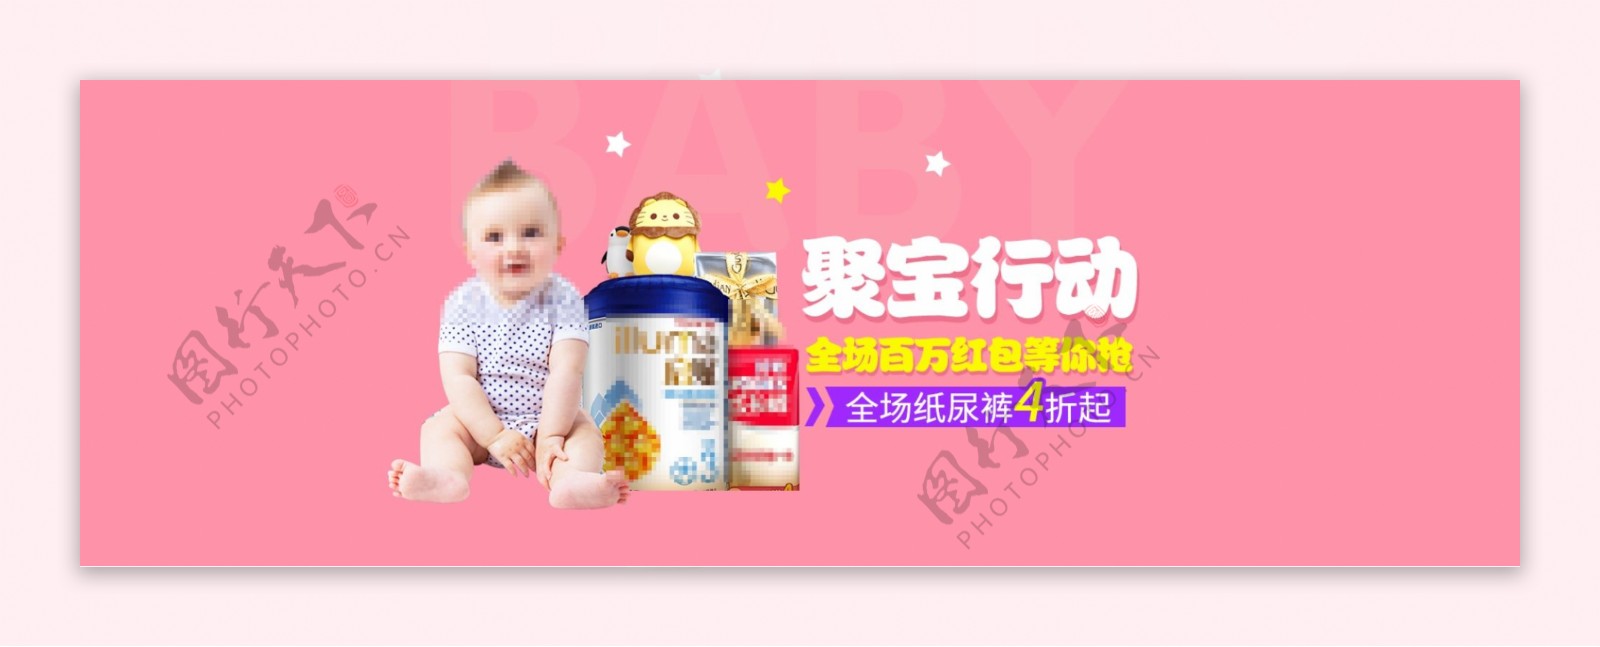 温馨母婴风格奶粉海报模板